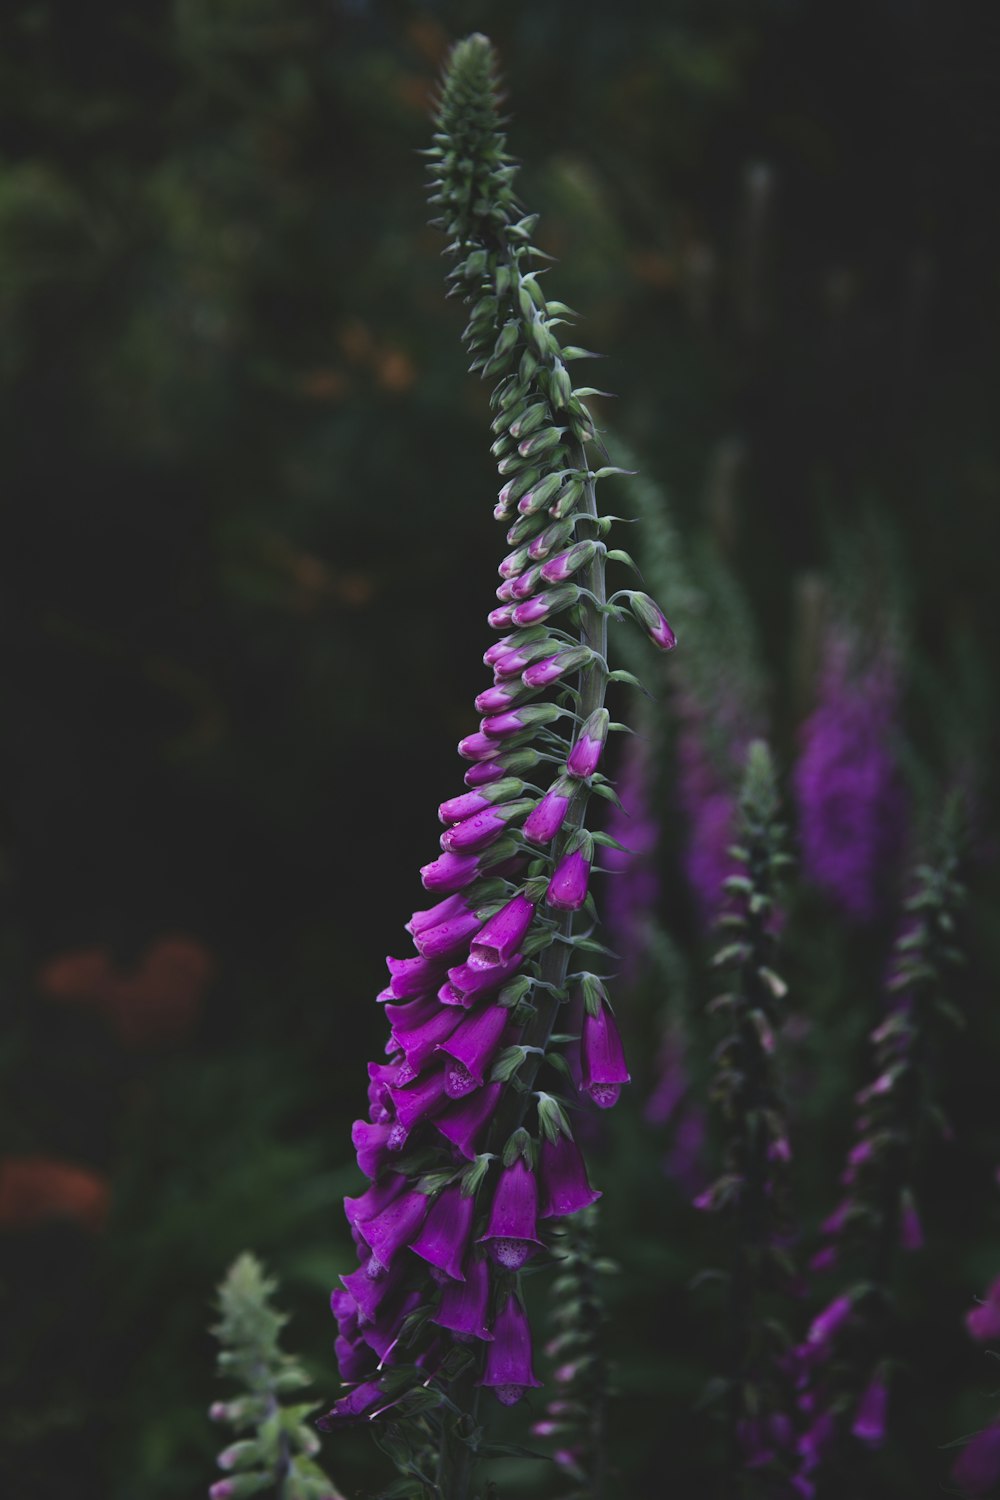 Flachfokusfotografie einer grünblättrigen Pflanze mit violetten Blüten